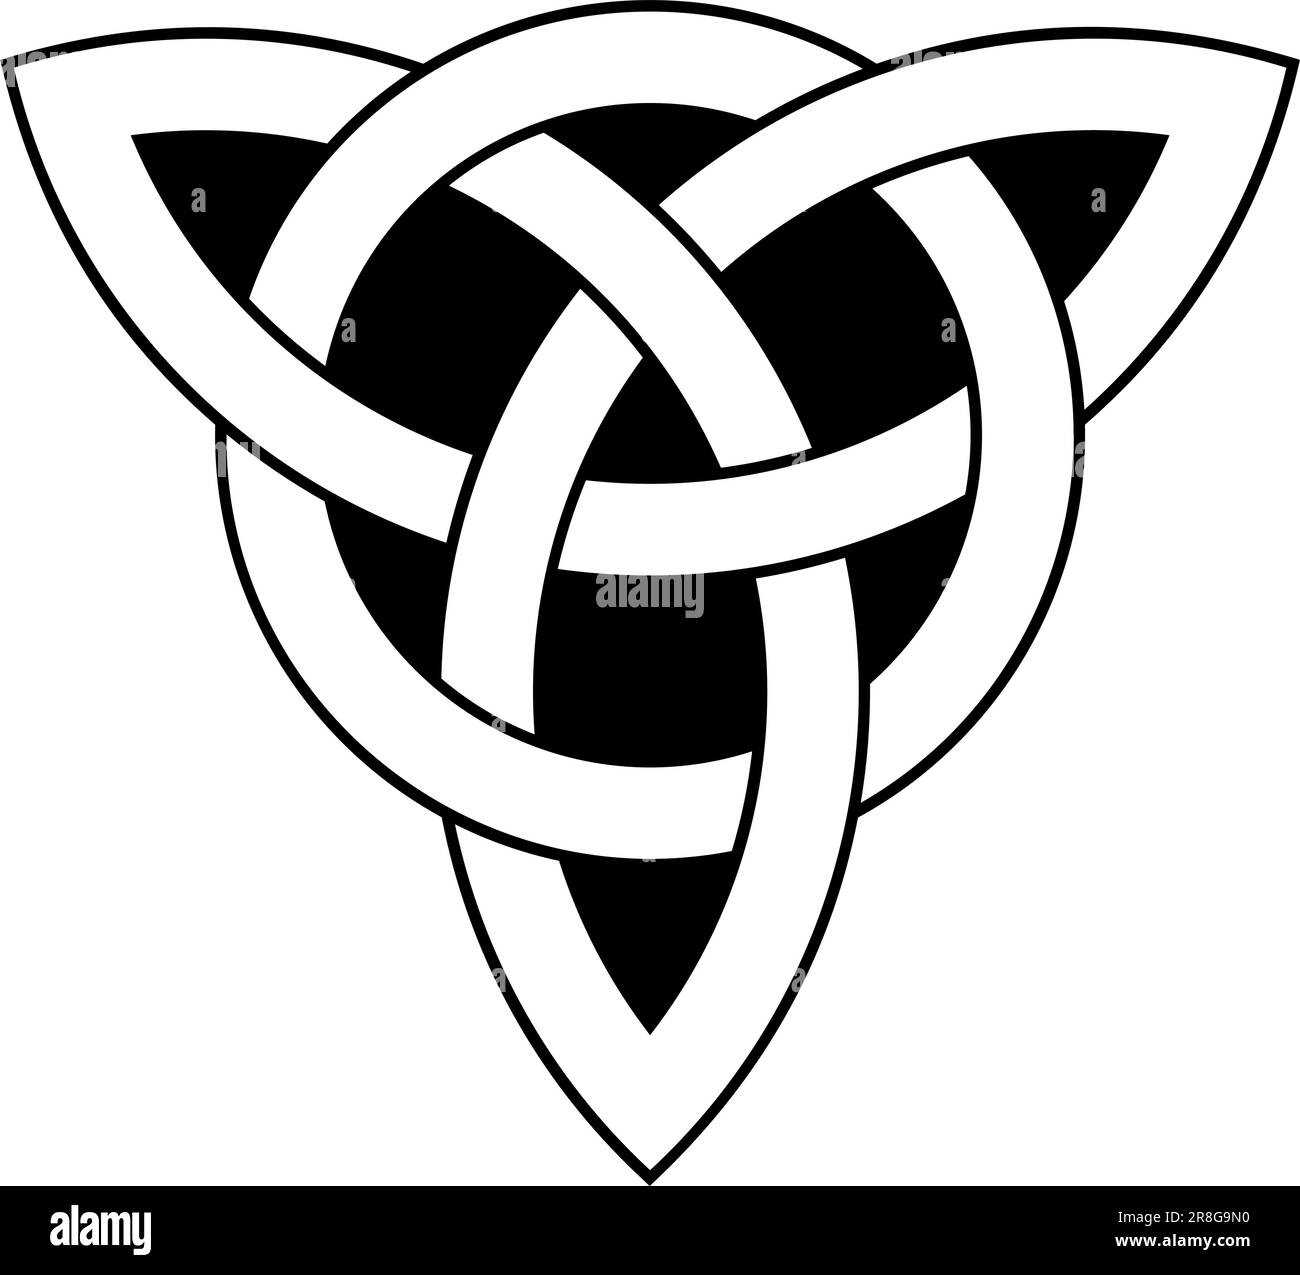 Nodo Trinity in contorno nero. Simbolo celtico noto anche come Triquetra. La Triqueta simboleggia le tre aree del corpo, della psiche e dello spirito. Illustrazione Vettoriale